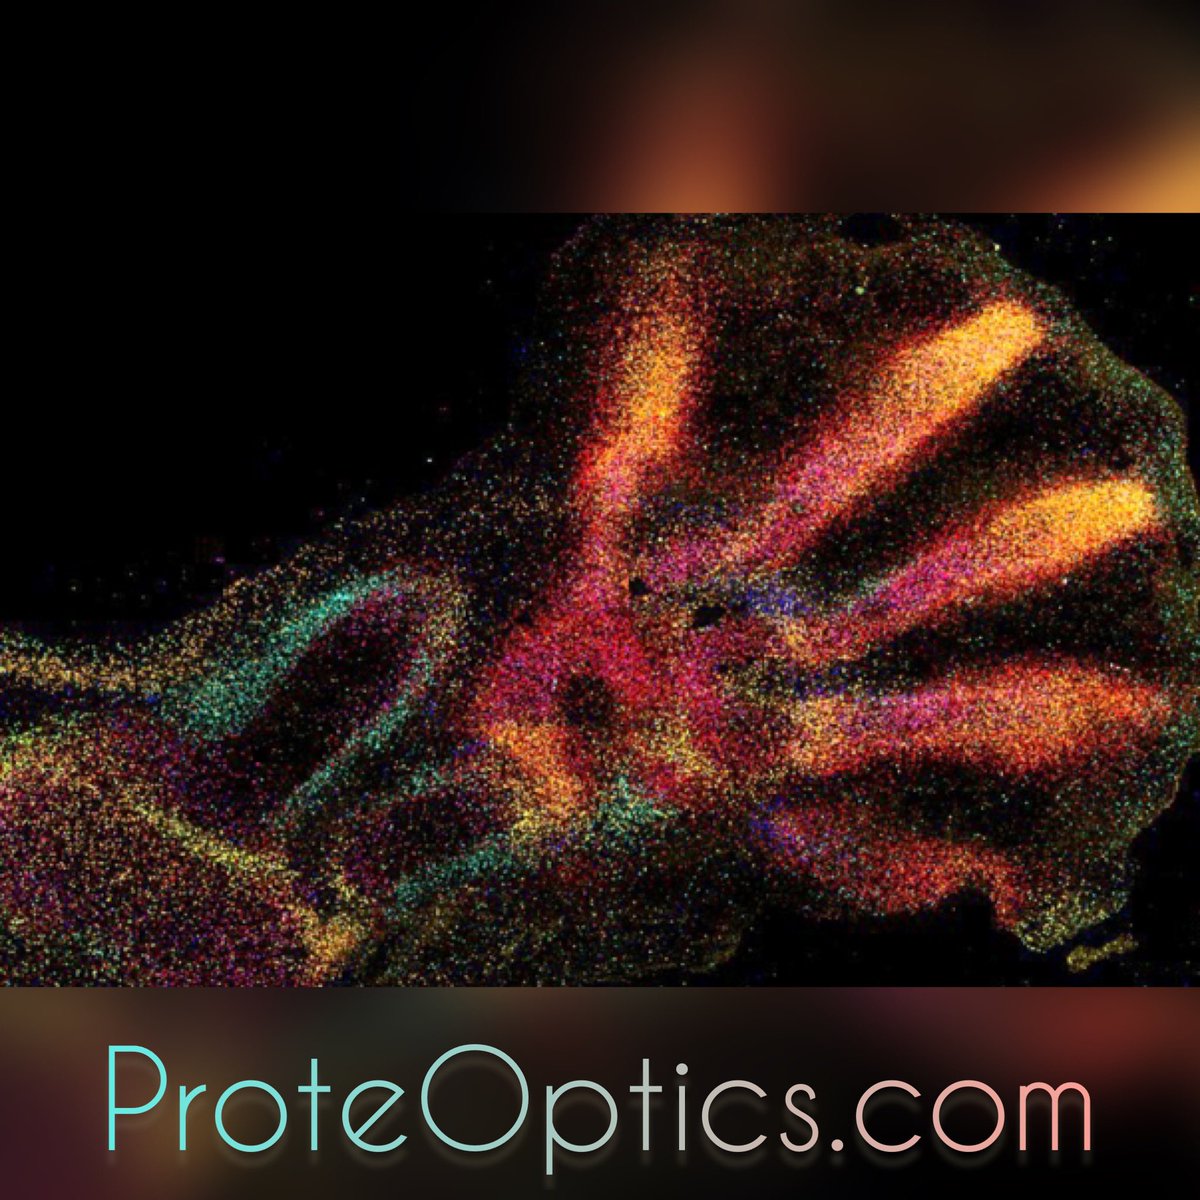 ProteOptics 🧬🔬

#domains #domainname #spatialproteomics #interactomics #spatialbiology #spatialtranscriptomics #precisionmedicine #multiomics #spatialomics #metabolomics #proteomics #singlecell #spatialphenotyping #proteoptics